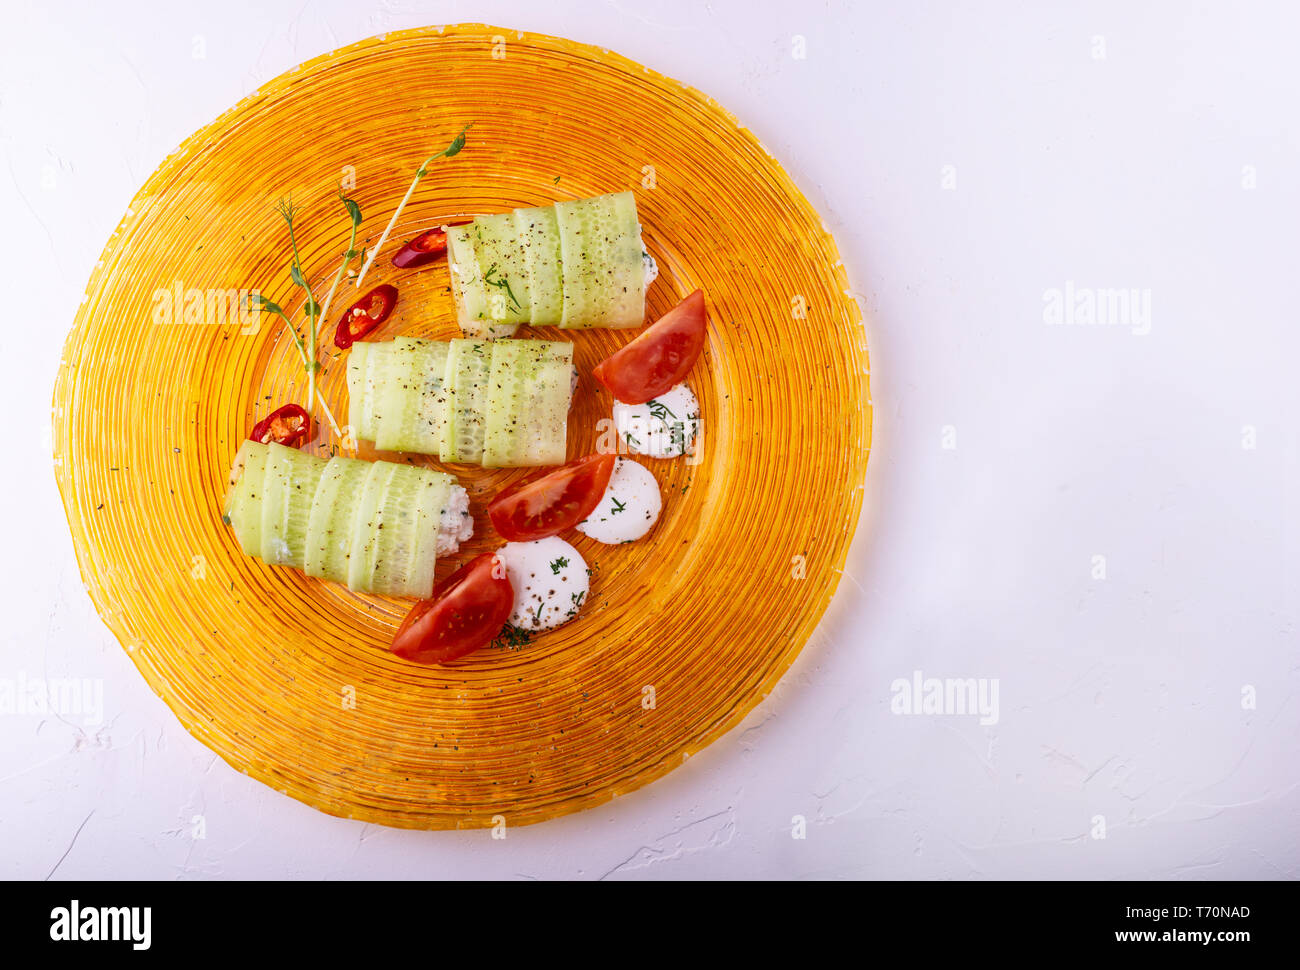 Il cibo italiano su sfondo bianco. Mozzarella, di foglie di basilico fresco, pomodoro, olio d'oliva, panini al formaggio e verdi sulla piastra. Vista dall'alto. Foto Stock